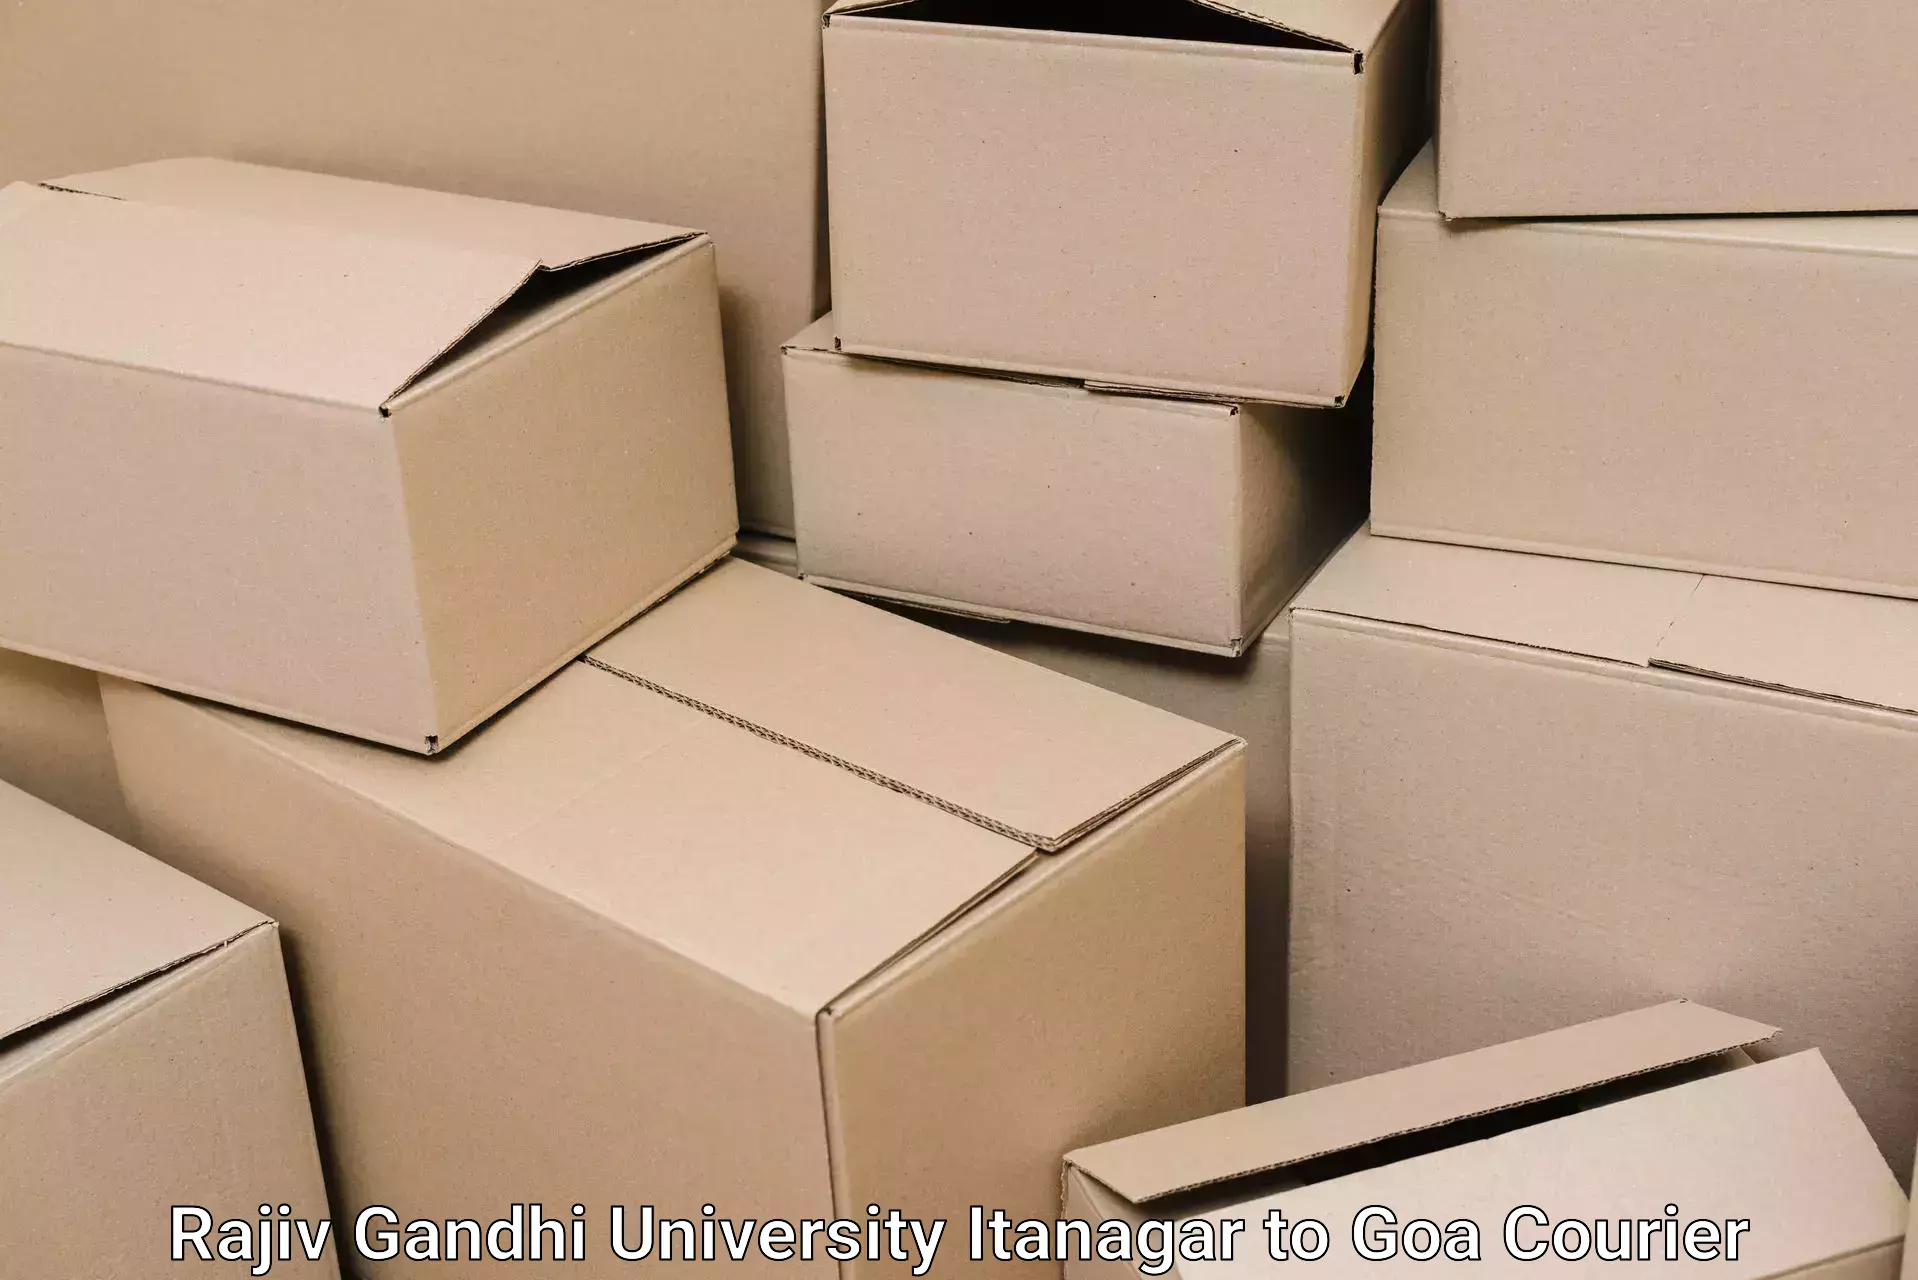 Furniture moving assistance in Rajiv Gandhi University Itanagar to Goa